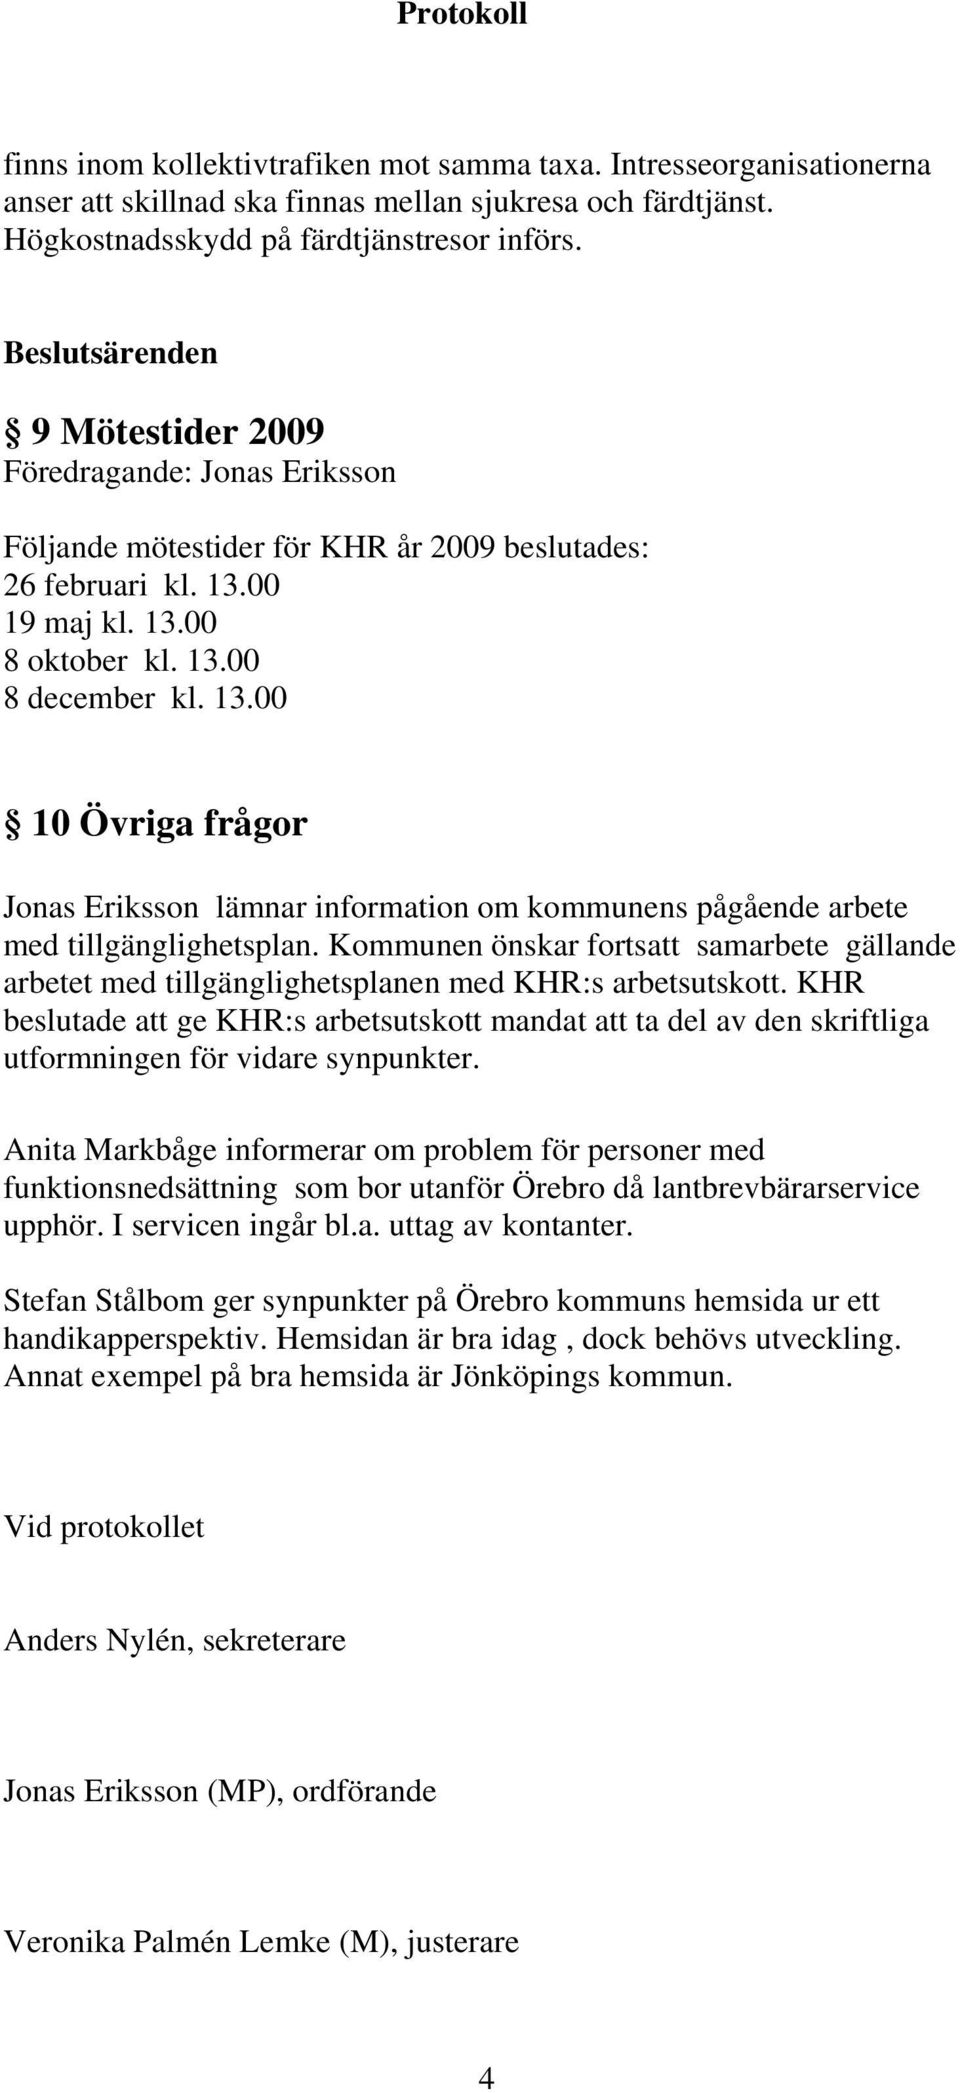 00 19 maj kl. 13.00 8 oktober kl. 13.00 8 december kl. 13.00 10 Övriga frågor Jonas Eriksson lämnar information om kommunens pågående arbete med tillgänglighetsplan.